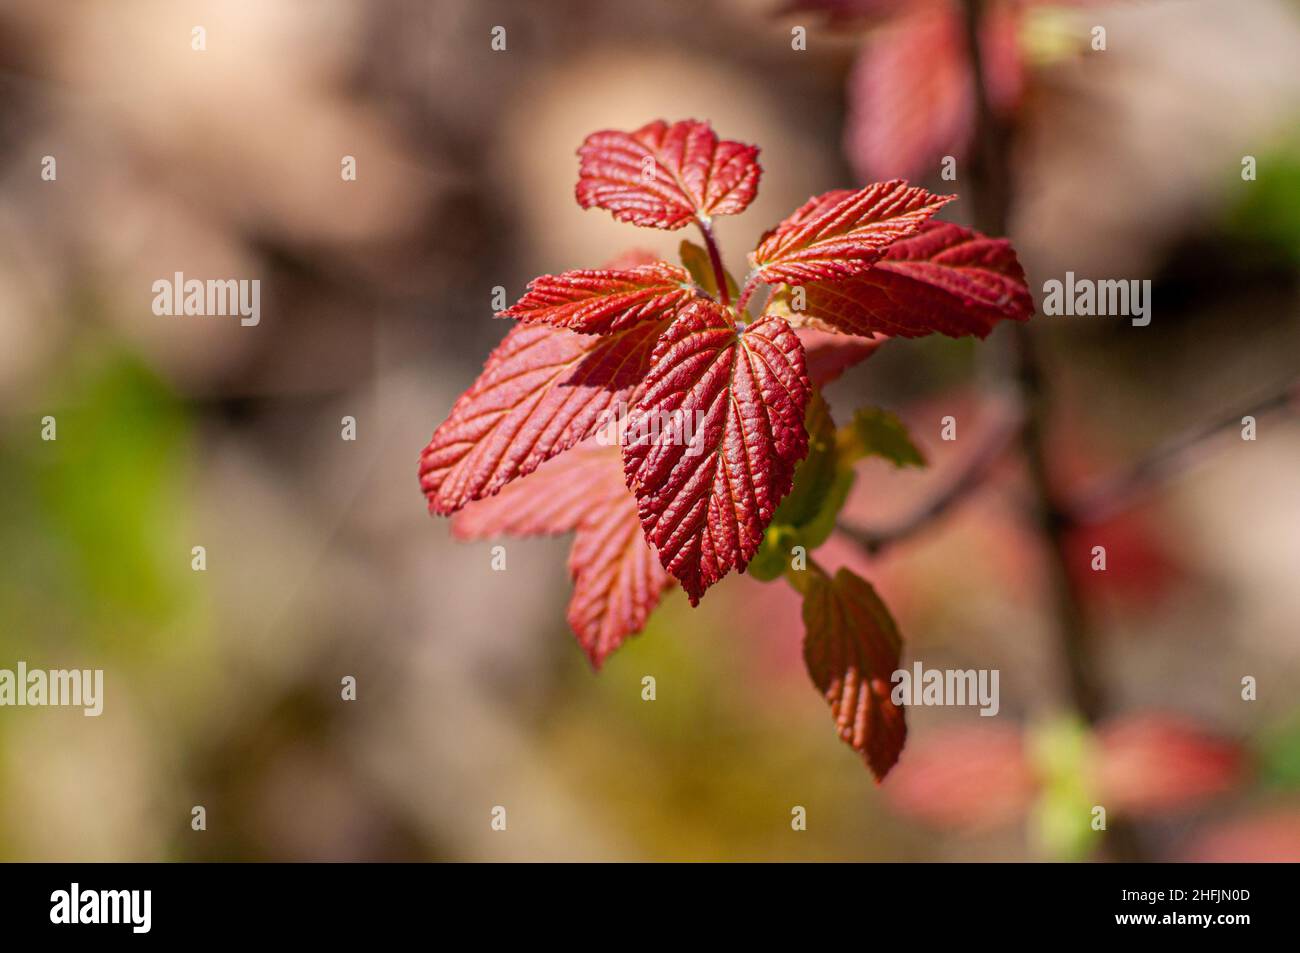 Jeunes feuilles rouges au printemps, illuminées par un soleil éclatant, photo macro, mise au point sélective.Contraste arrière-plan flou sur le thème de la nature. Banque D'Images